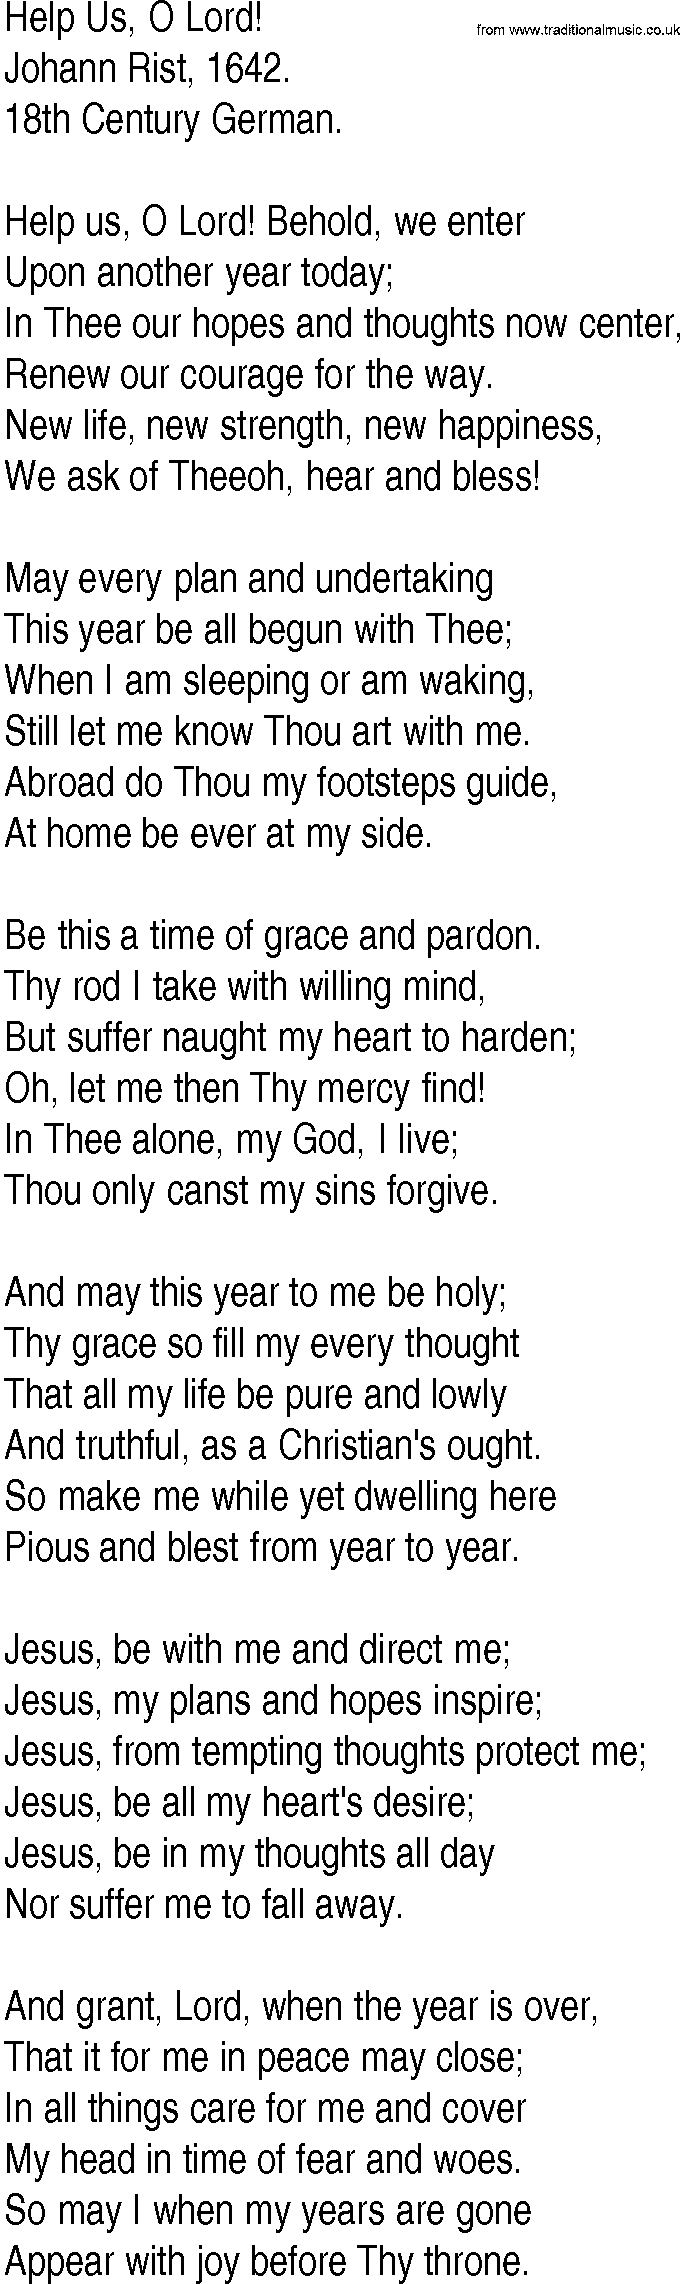 Hymn and Gospel Song: Help Us, O Lord! by Johann Rist lyrics